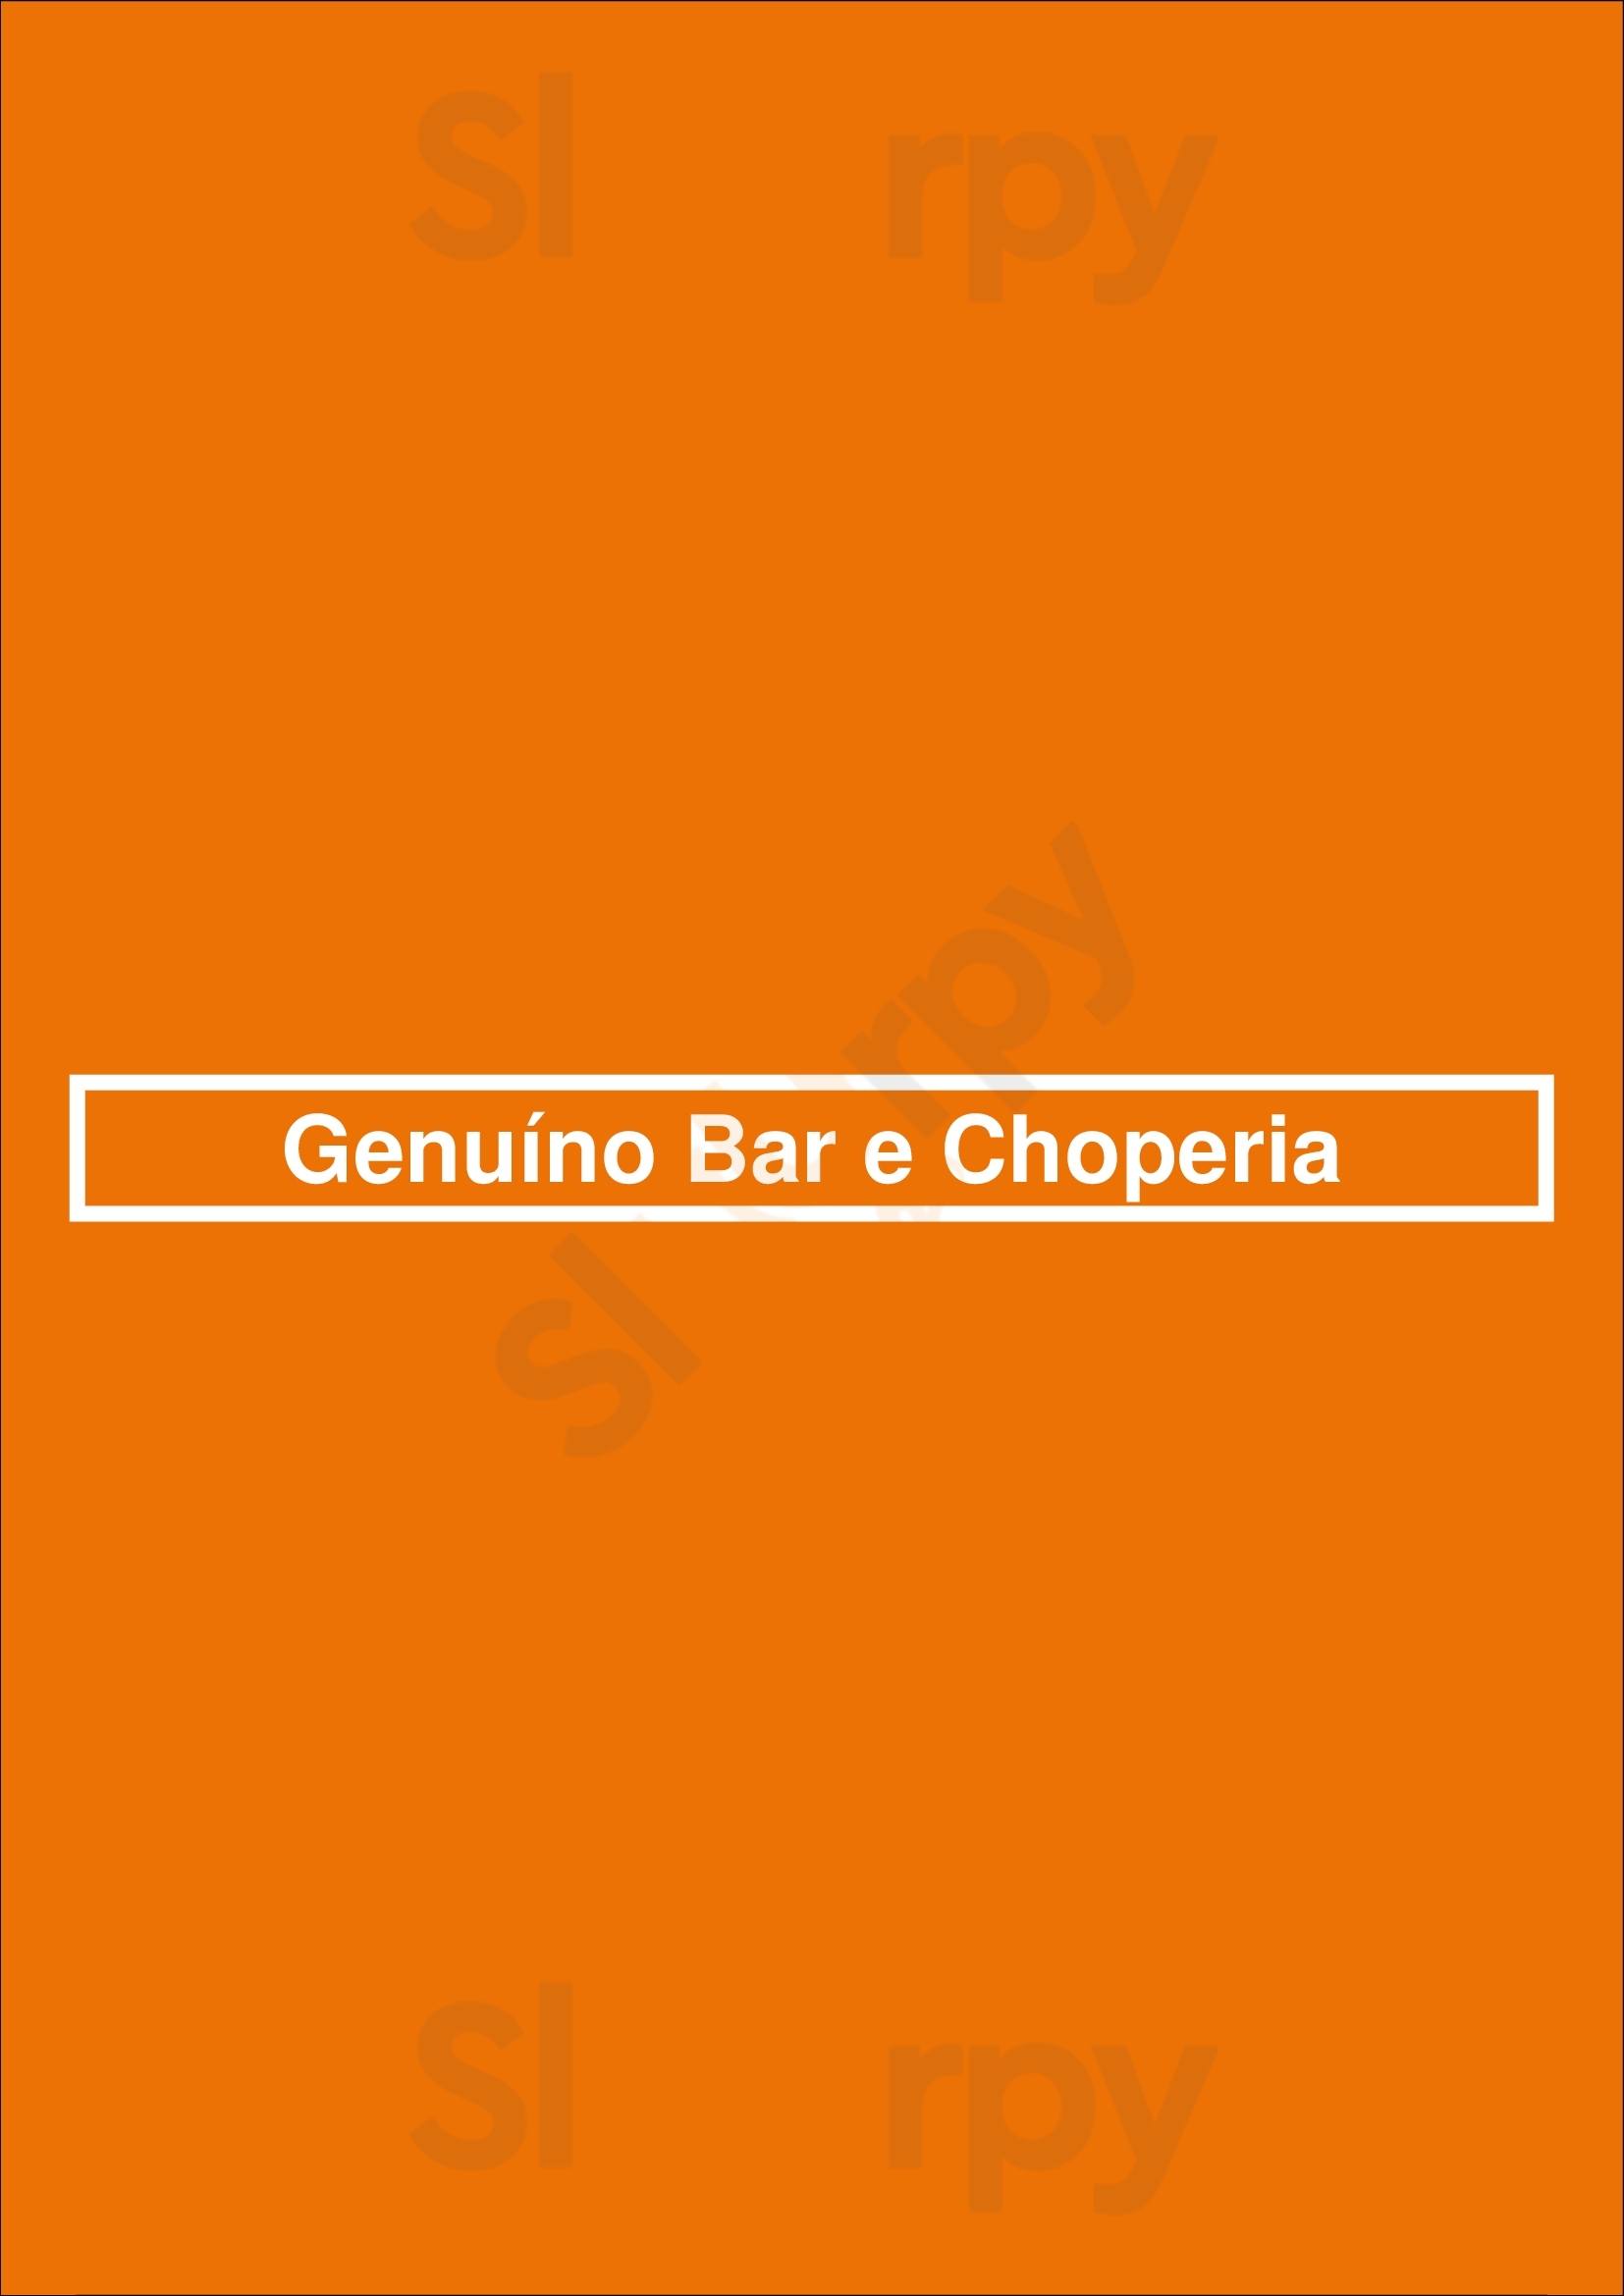 Genuíno Bar E Choperia São Paulo Menu - 1